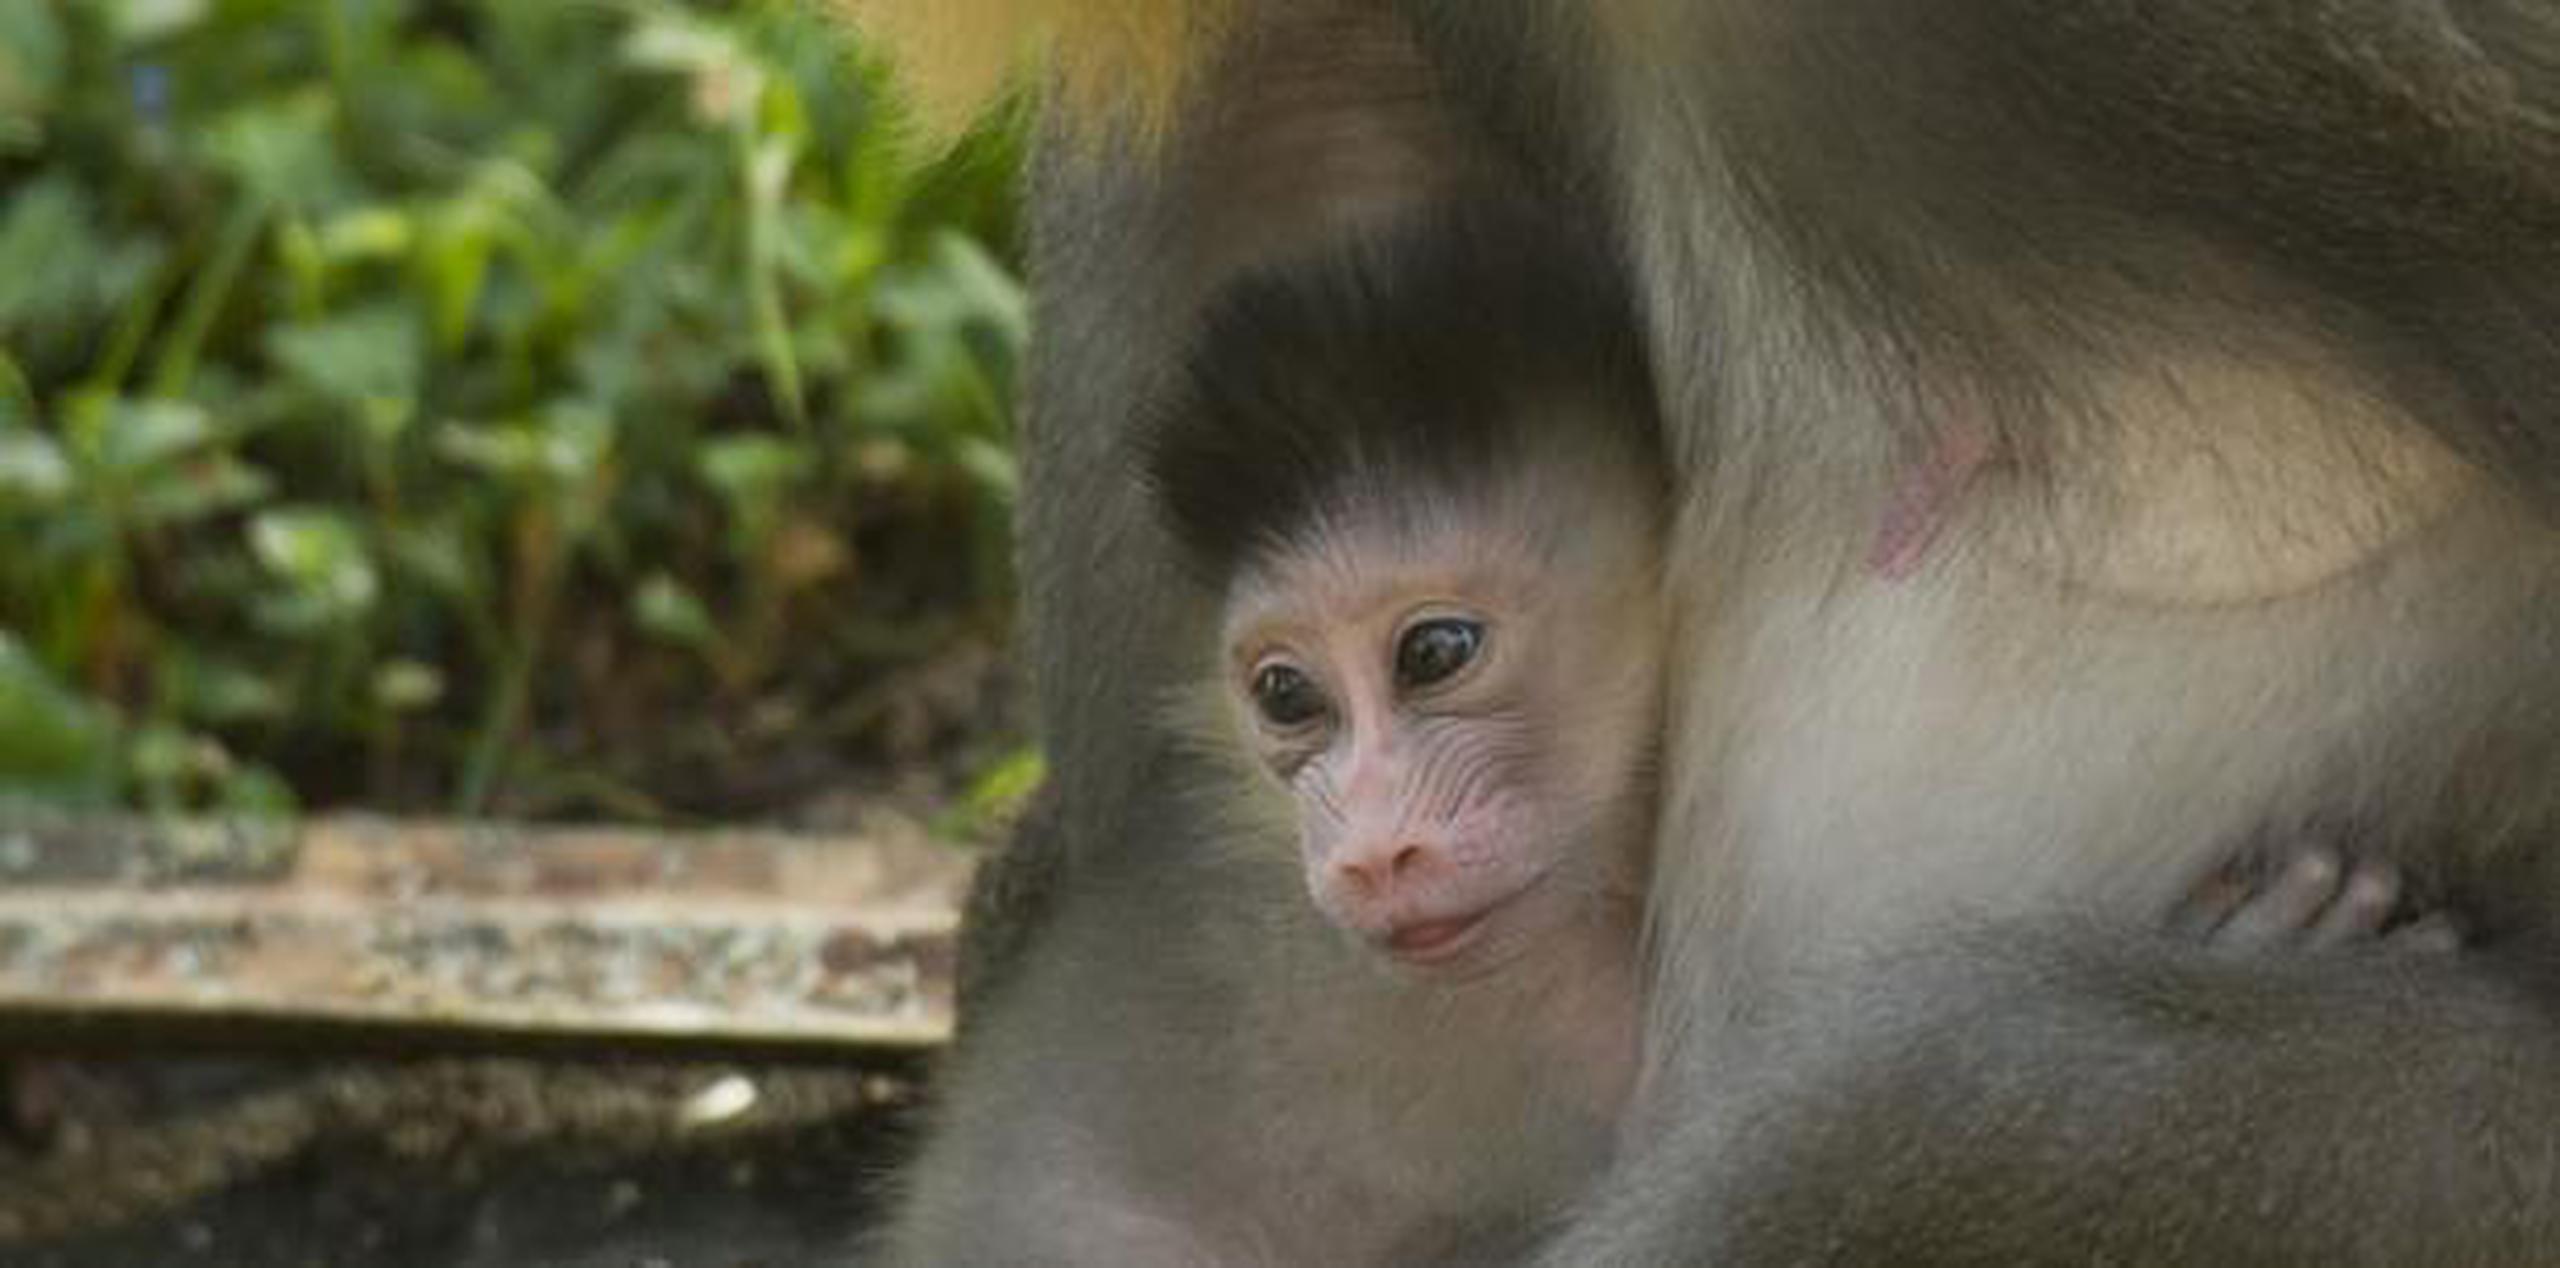 Los mandriles son la especie de mono más grande y una de las más coloridas. (Suministrada)